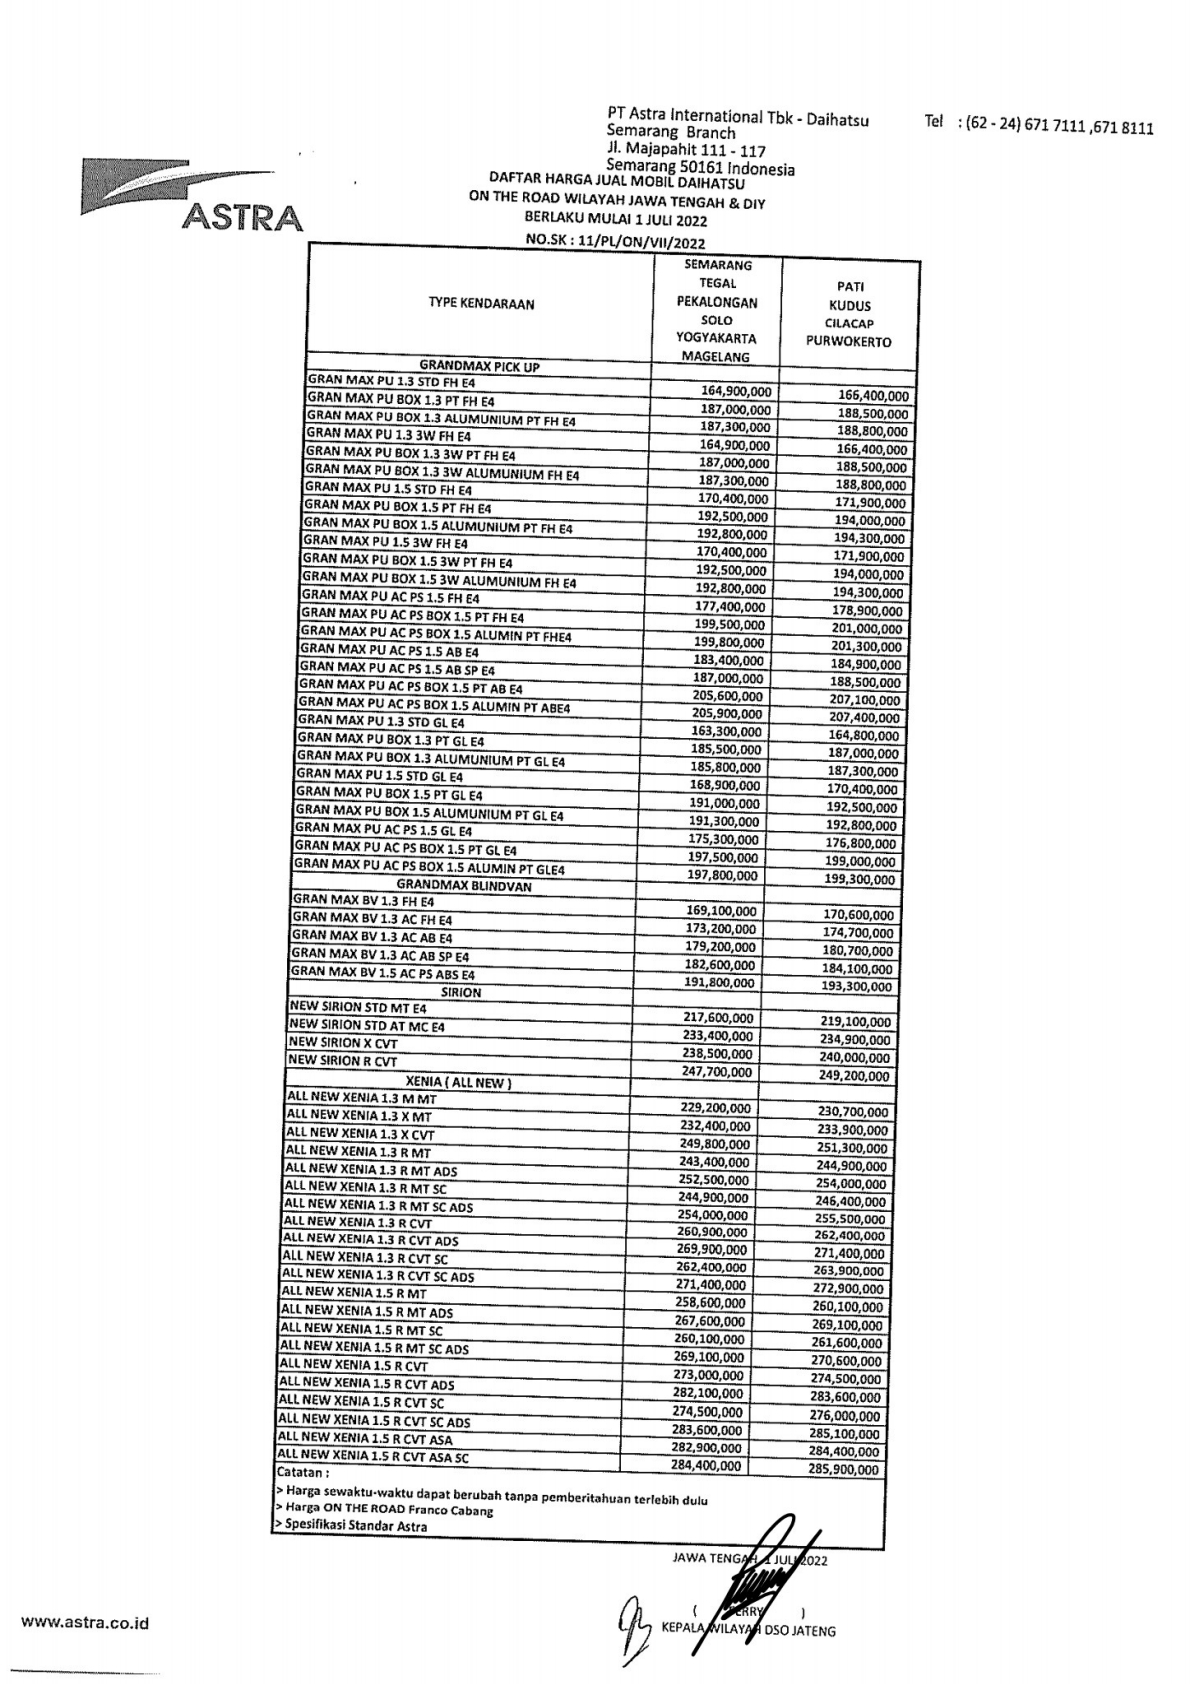 Price list Daihatsu pekalongan